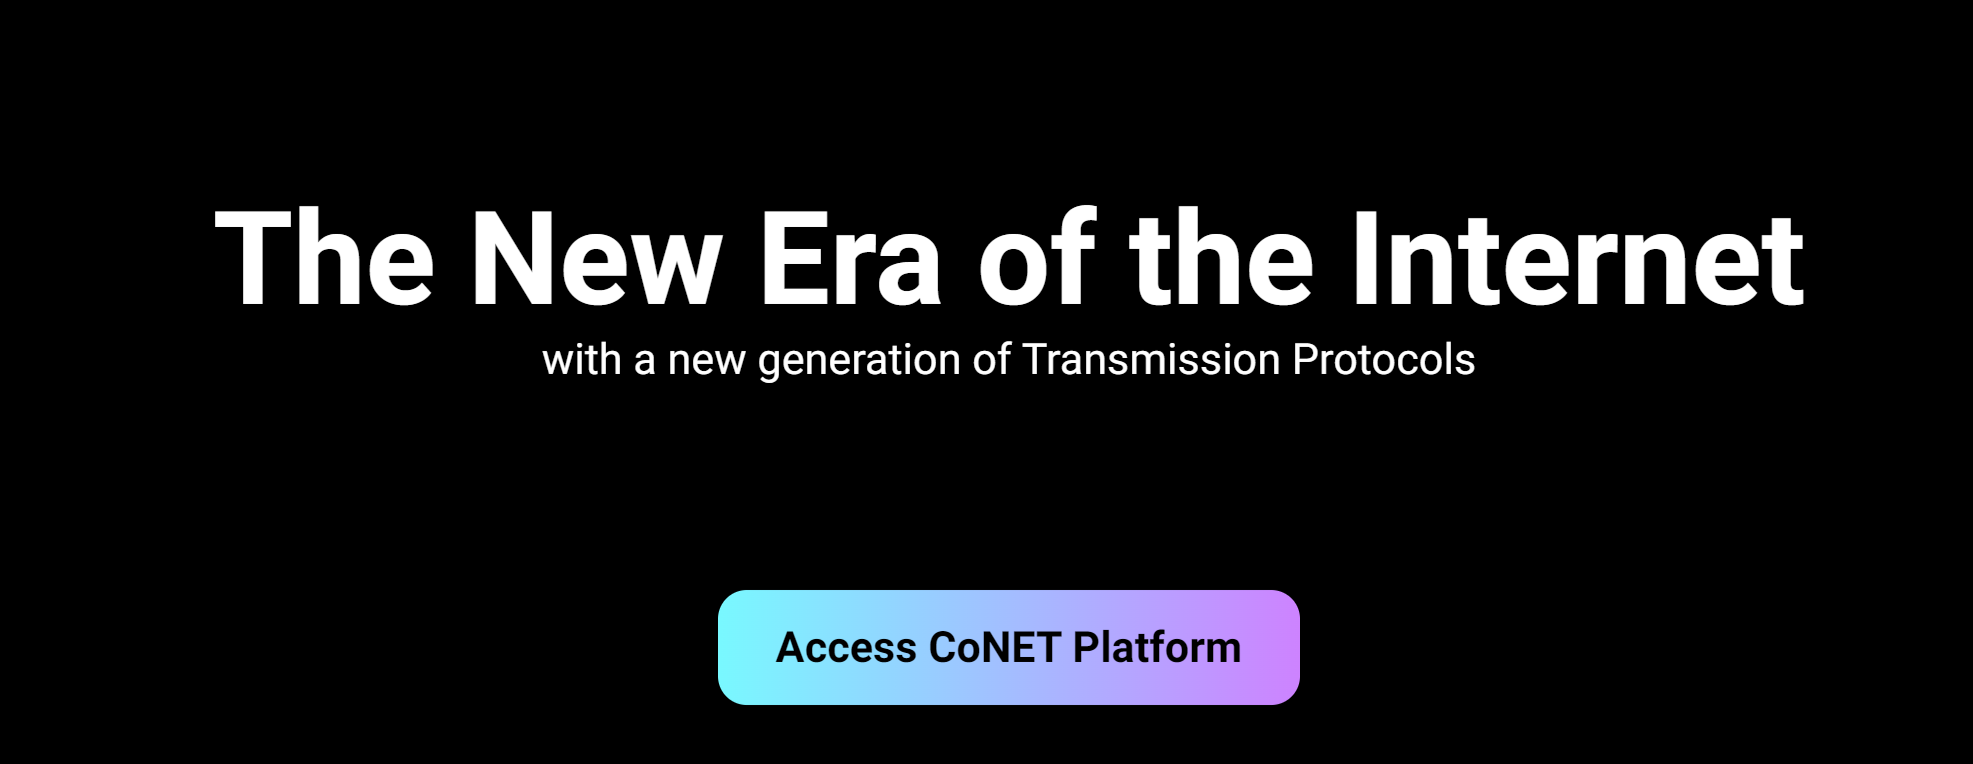 早期挖矿项目“CONET”，​使用你的闲置资源即可获得CNTP代币积分储存于个人钱包中，主网正式上线以后可直接兑换为正式主网代币！